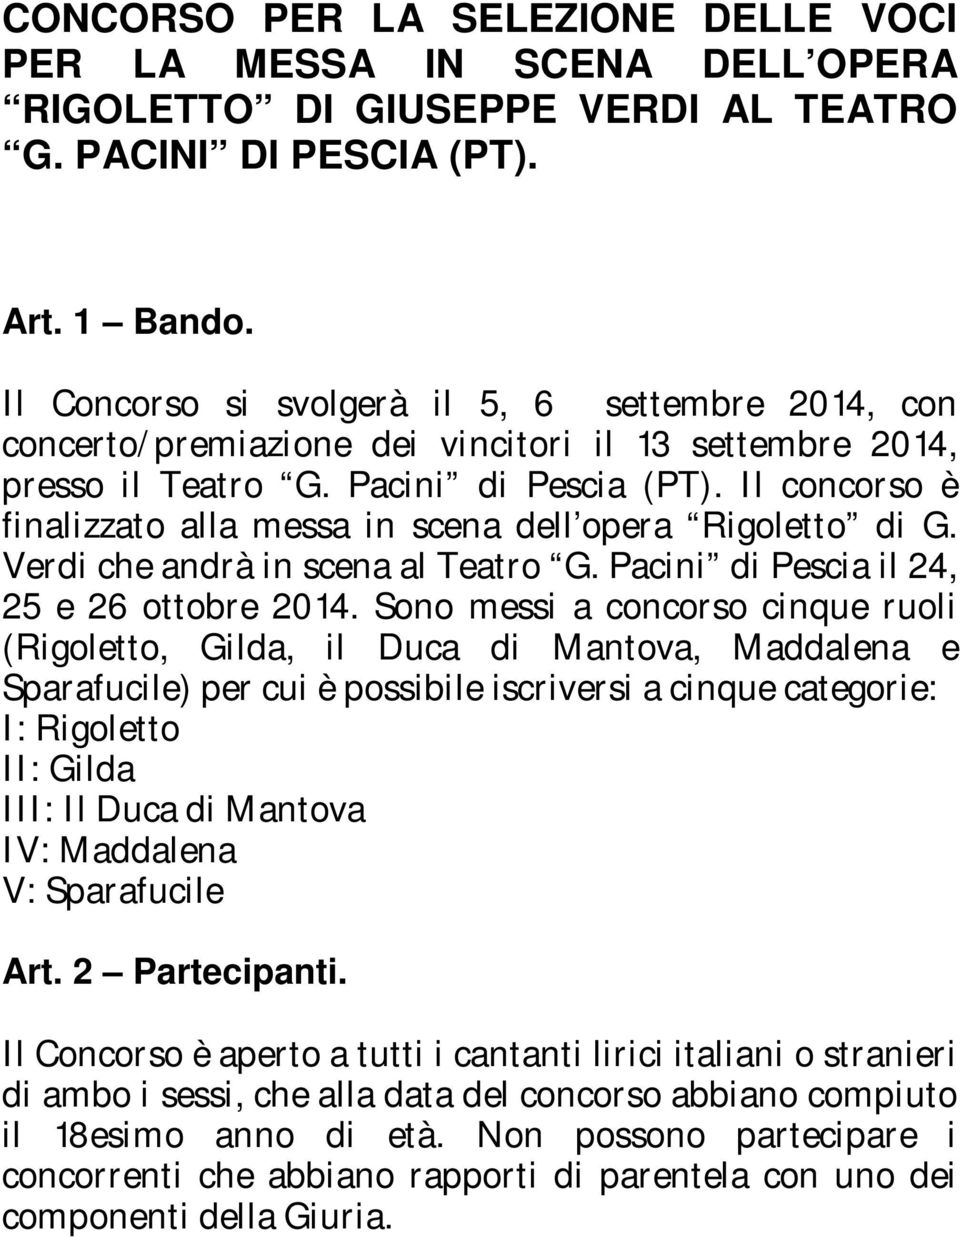 Il concorso è finalizzato alla messa in scena dell opera Rigoletto di G. Verdi che andrà in scena al Teatro G. Pacini di Pescia il 24, 25 e 26 ottobre 2014.